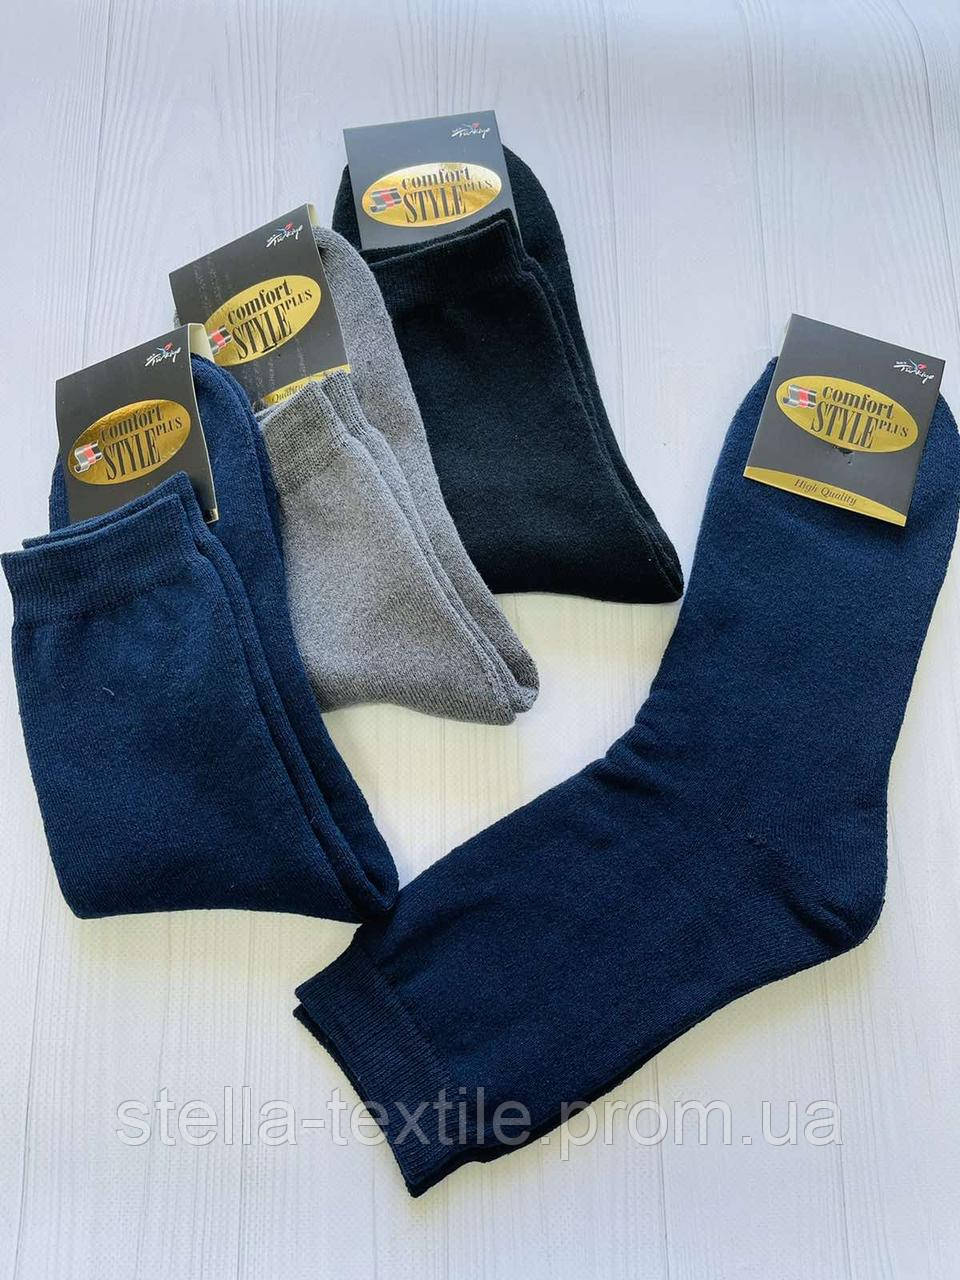 Шкарпетки чоловічі махрові зимові Comfort style р 41-44